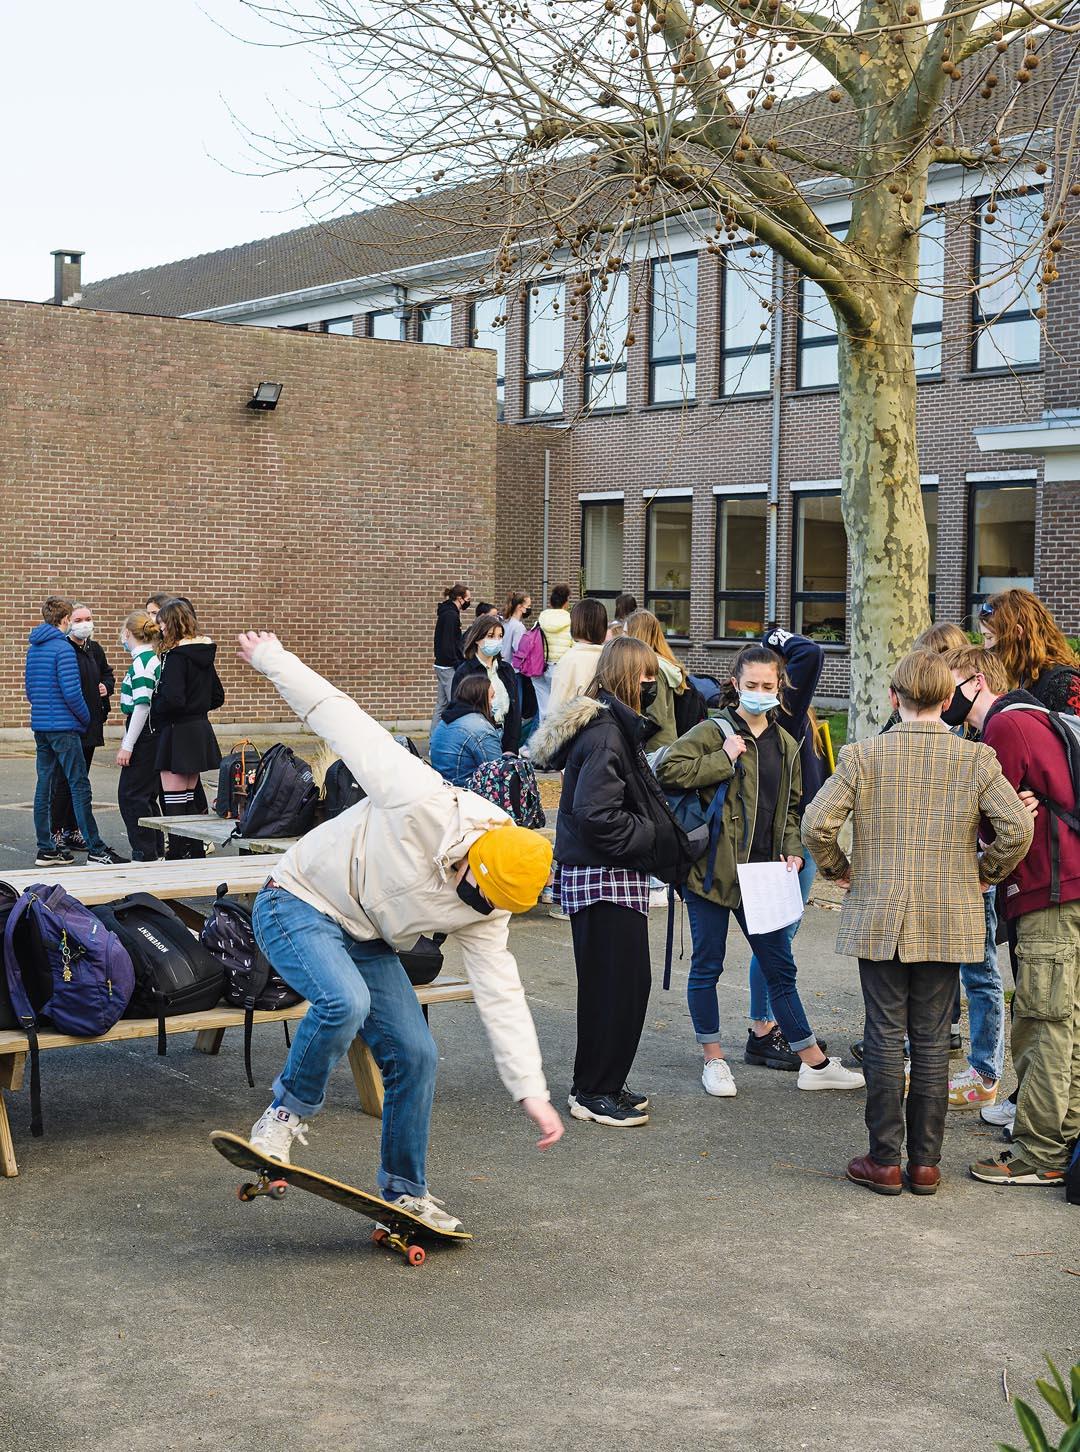 Jongeren praten op de speelplaats en een jongen stunt op zijn skateboard